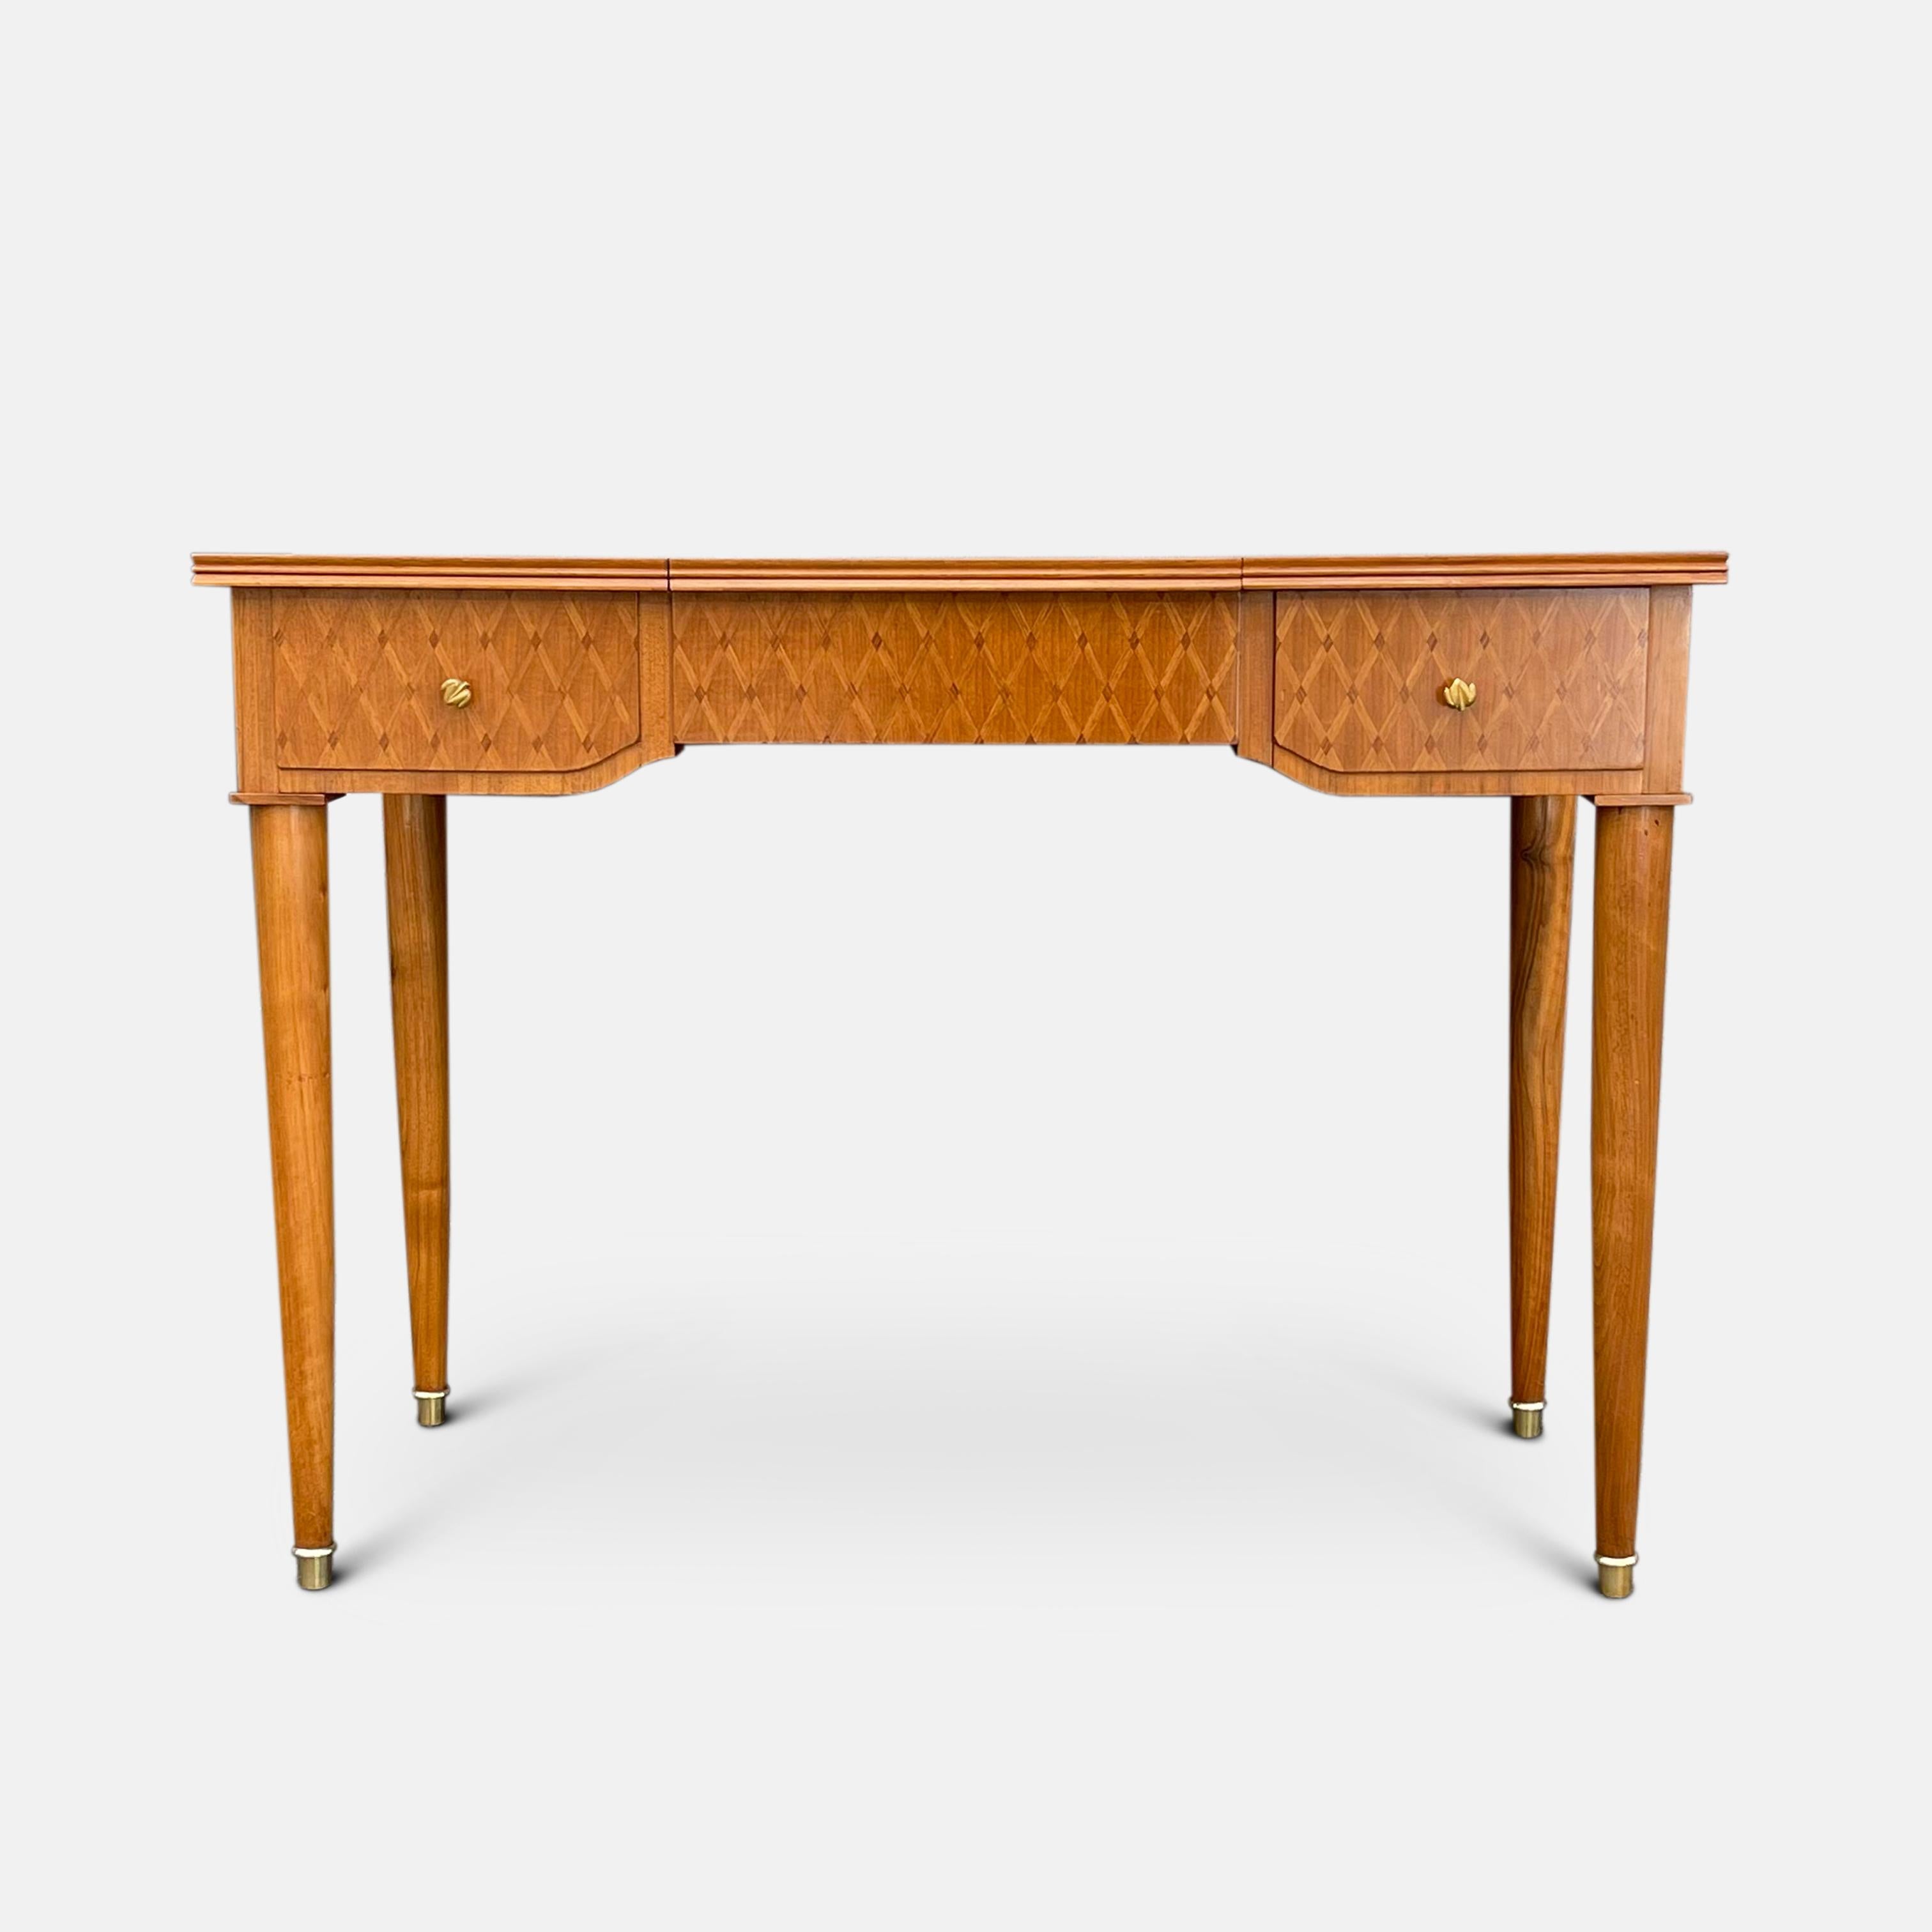 Schreib- und Schminktisch für Damen von Jules Leleu, ca. 1950er Jahre 
Ein schön proportioniertes Möbelstück, das eine Kombination aus Waschtisch und Schreibtisch darstellt. Die Mitte lässt sich anheben und gibt den Blick auf ein Fach und einen